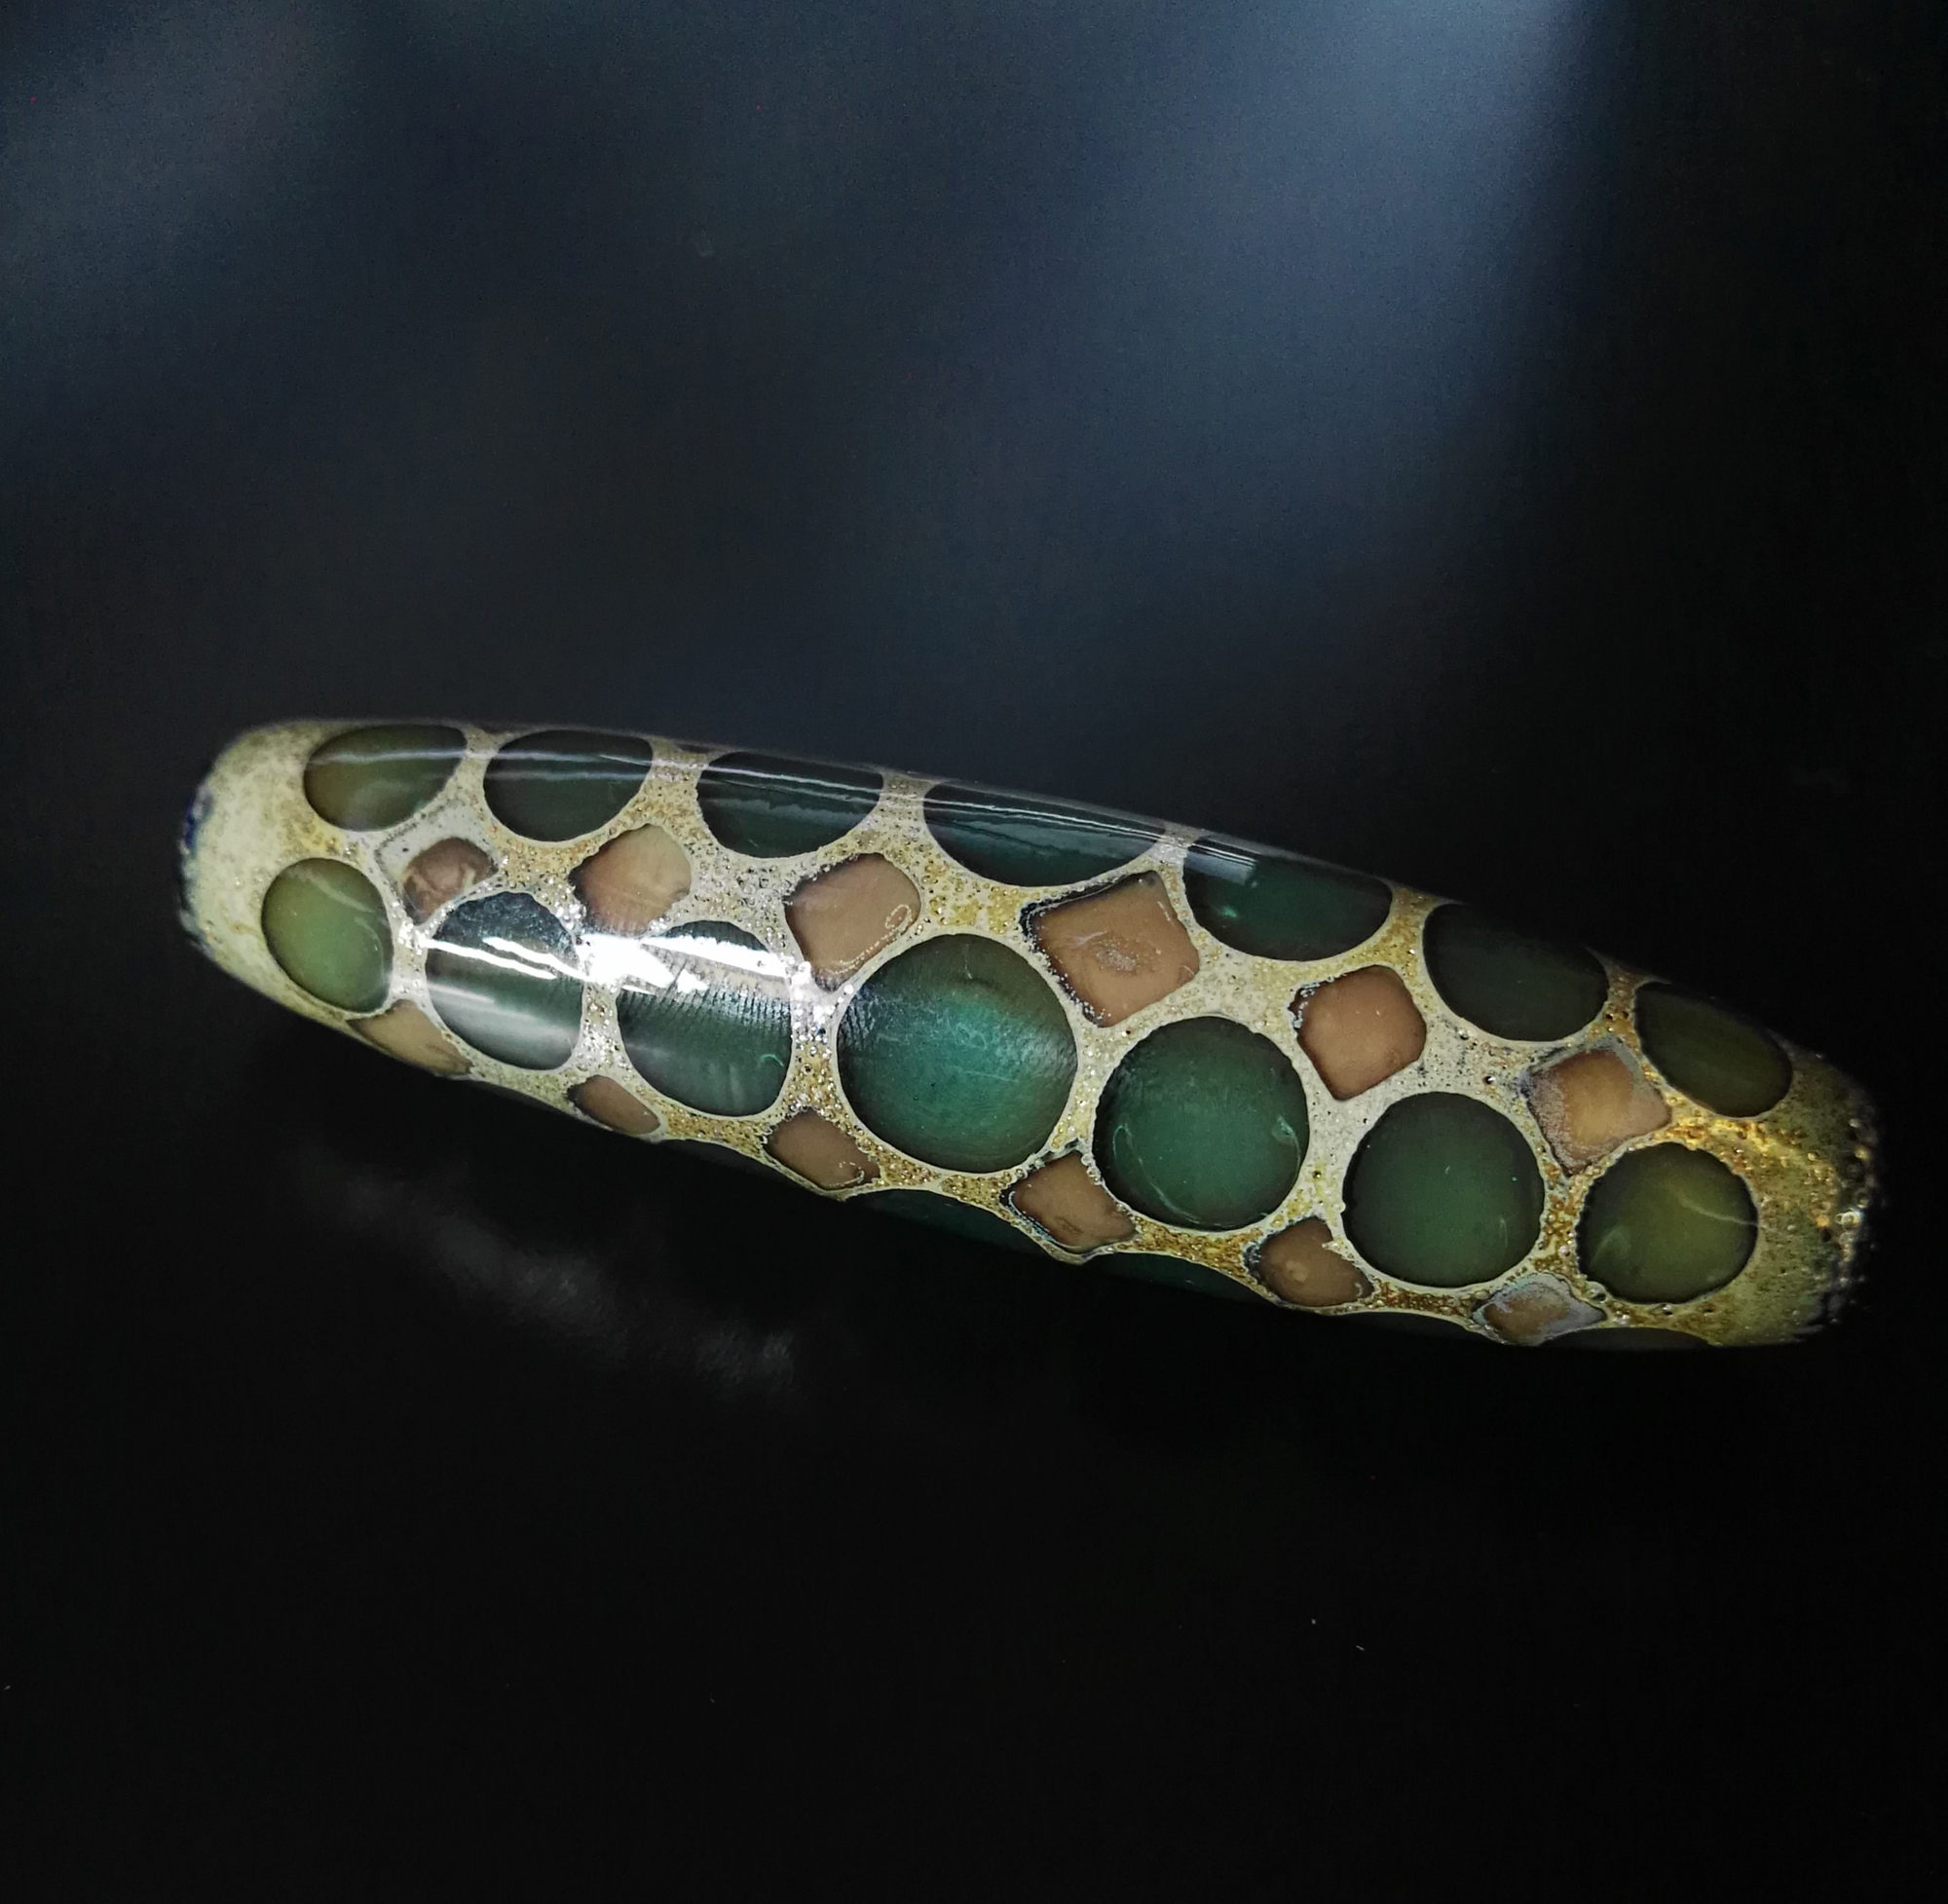 Murano glass bead in lagoon green by Alessia Fuga- perla di vetro in verde laguna fatta a mano da Alessia Fuga